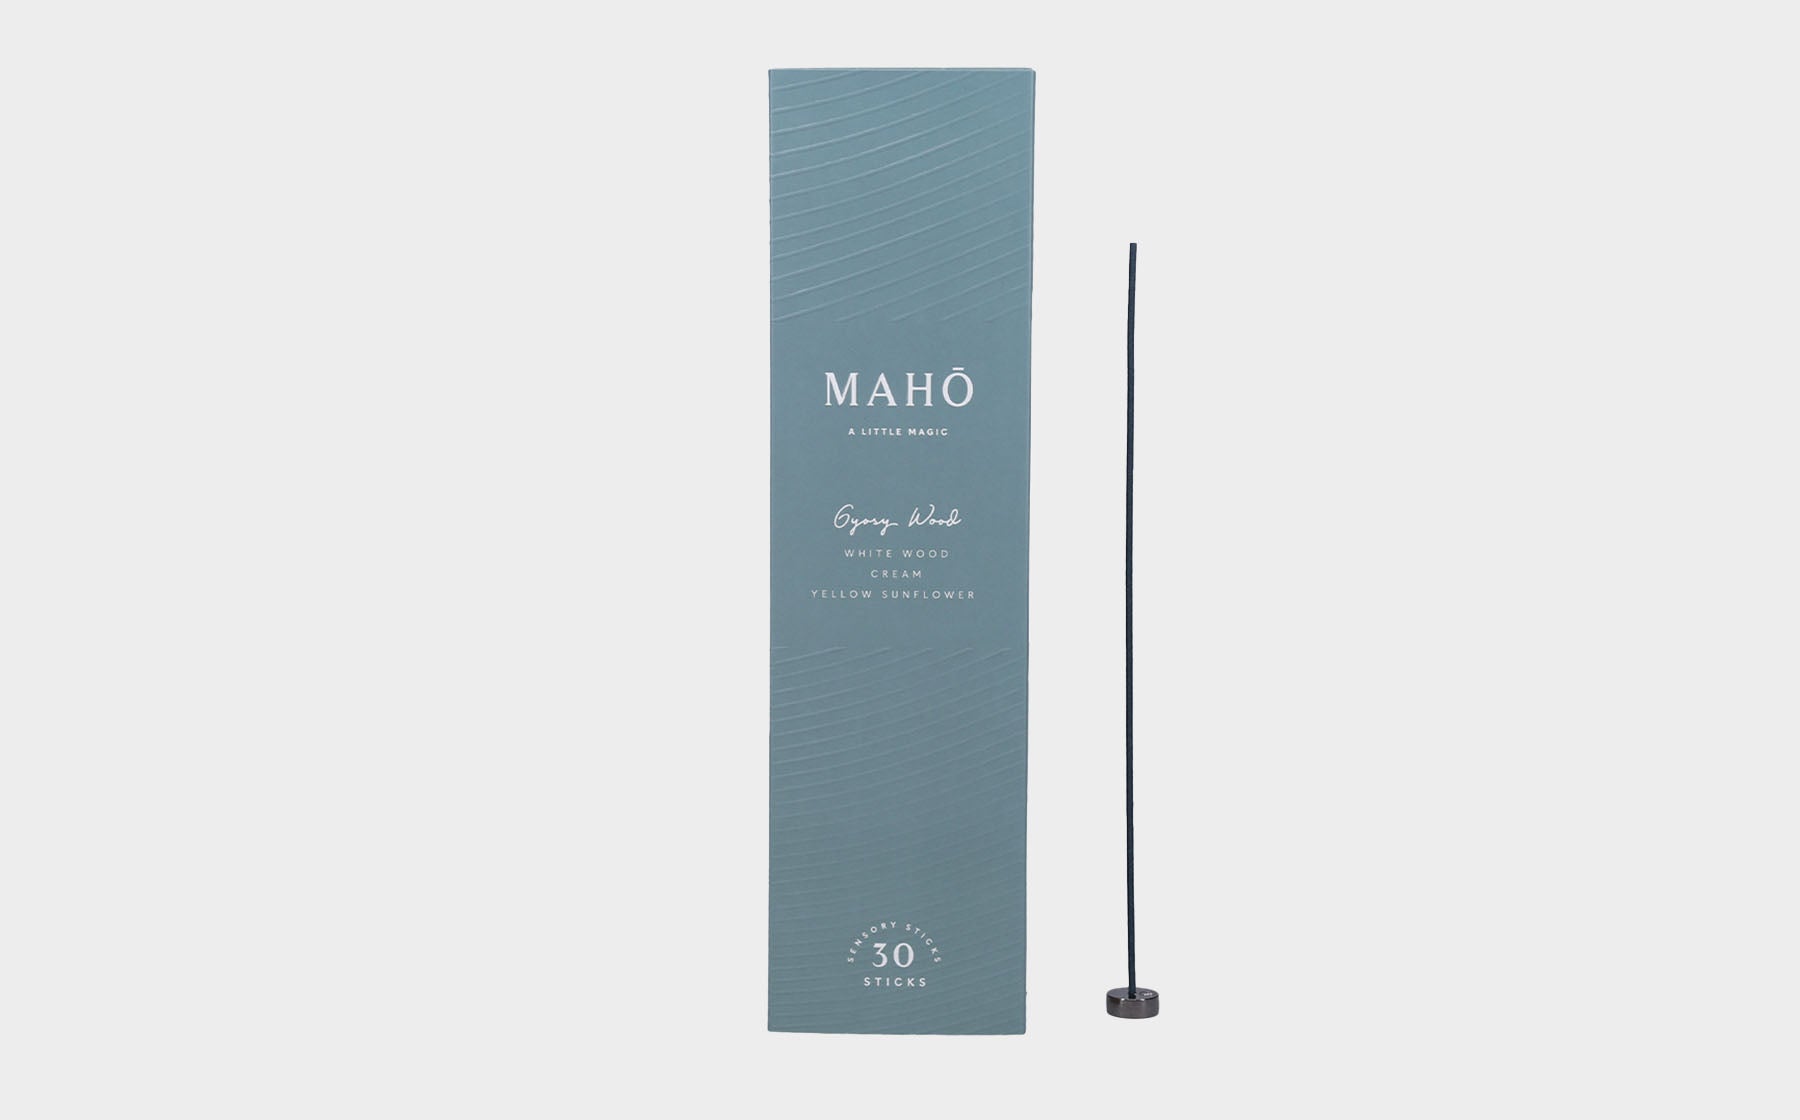 MAHO Sensory Sticks